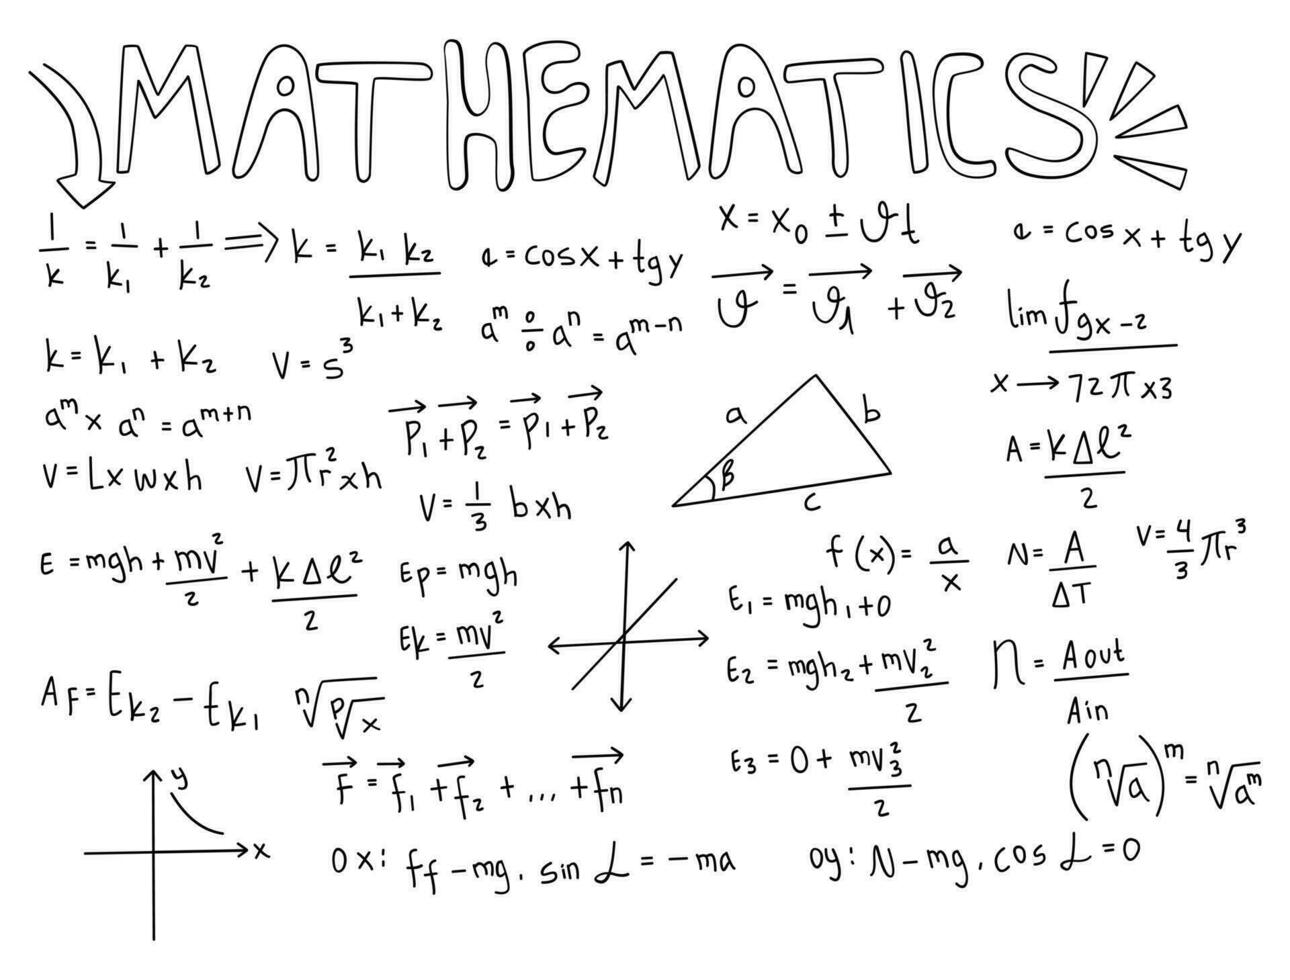 illustrazione realistica del fondo della lavagna di matematica vettore